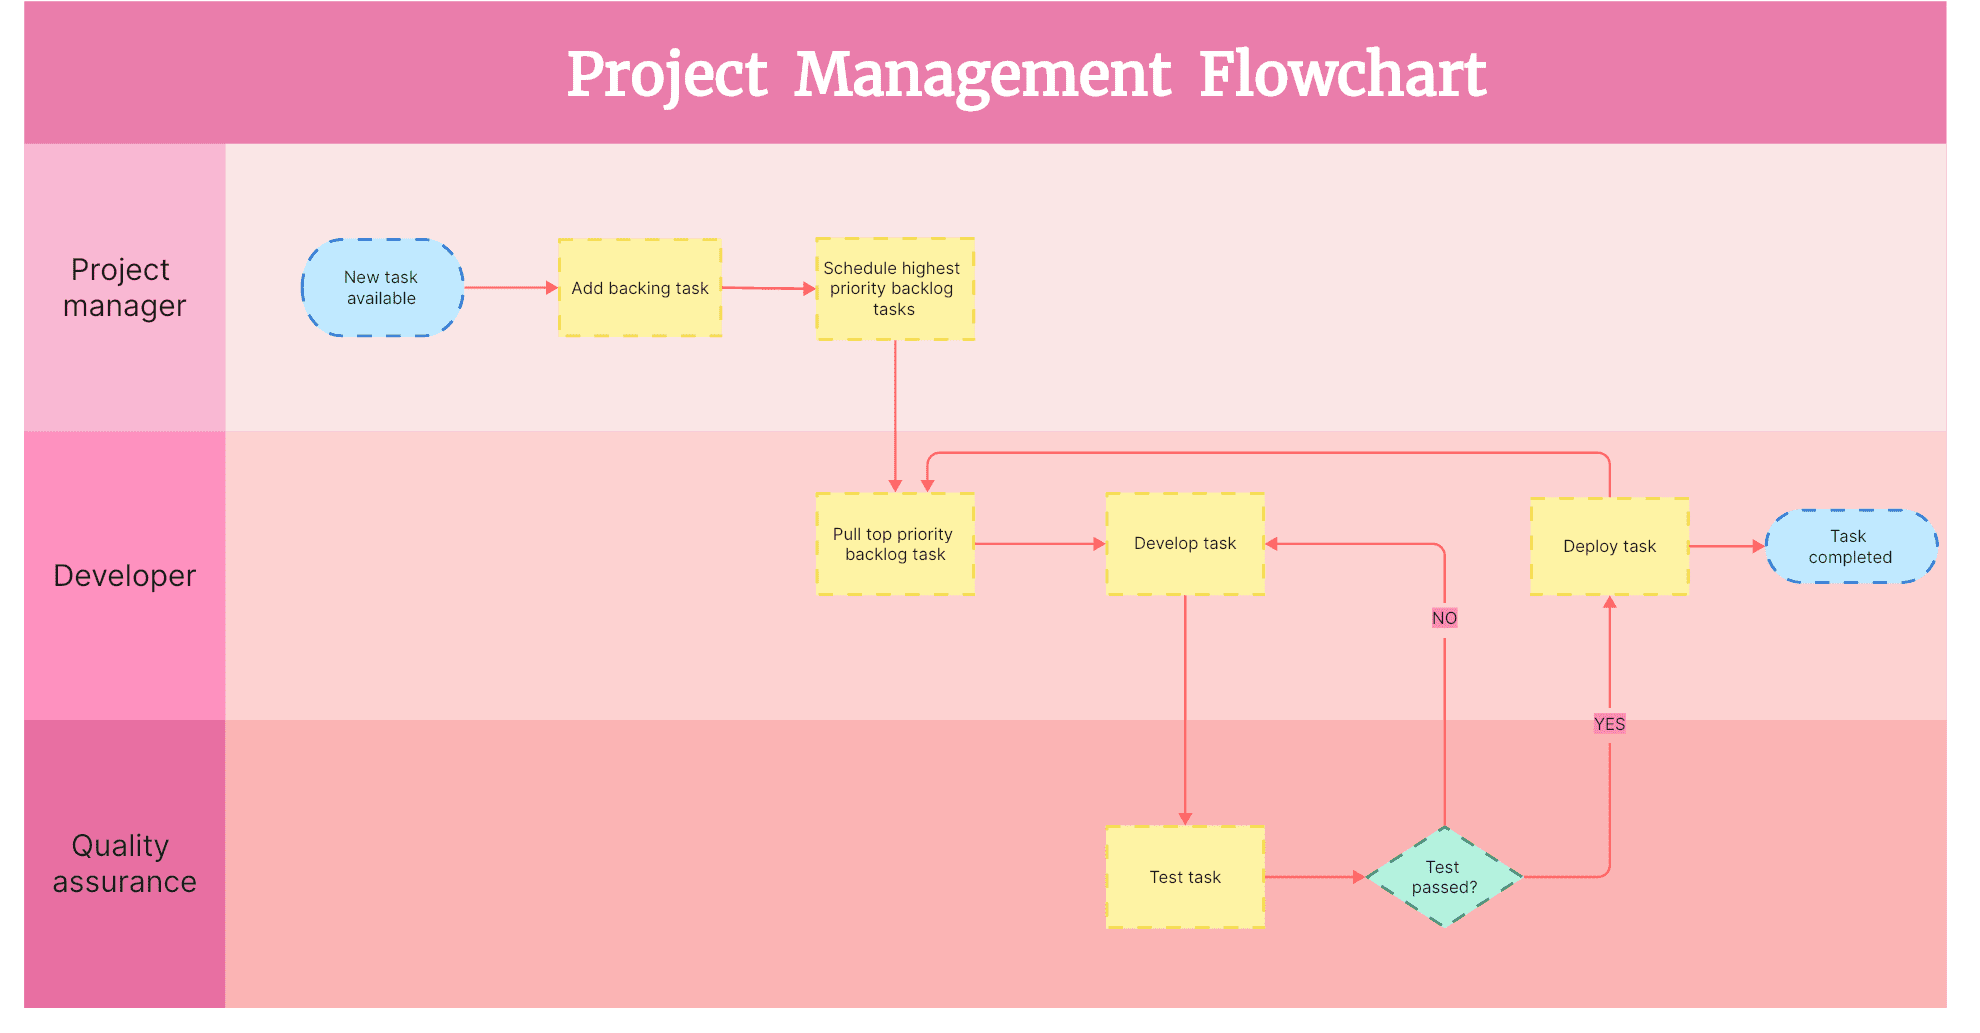 6. Project management flowchart